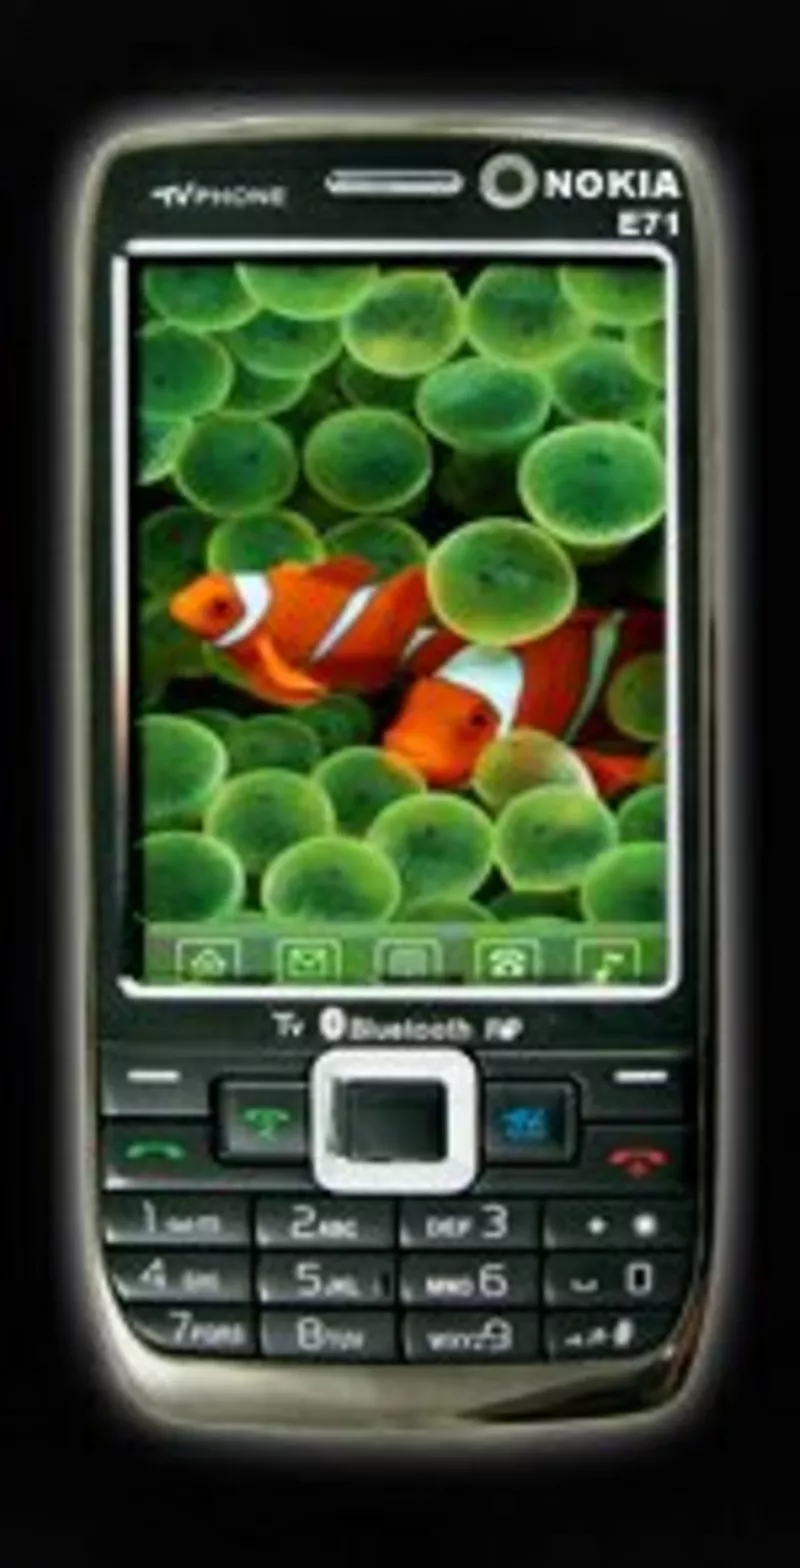 Nokia E71 TV (2 SIM карты,  цветное ТВ,  Java) 1550 грн.